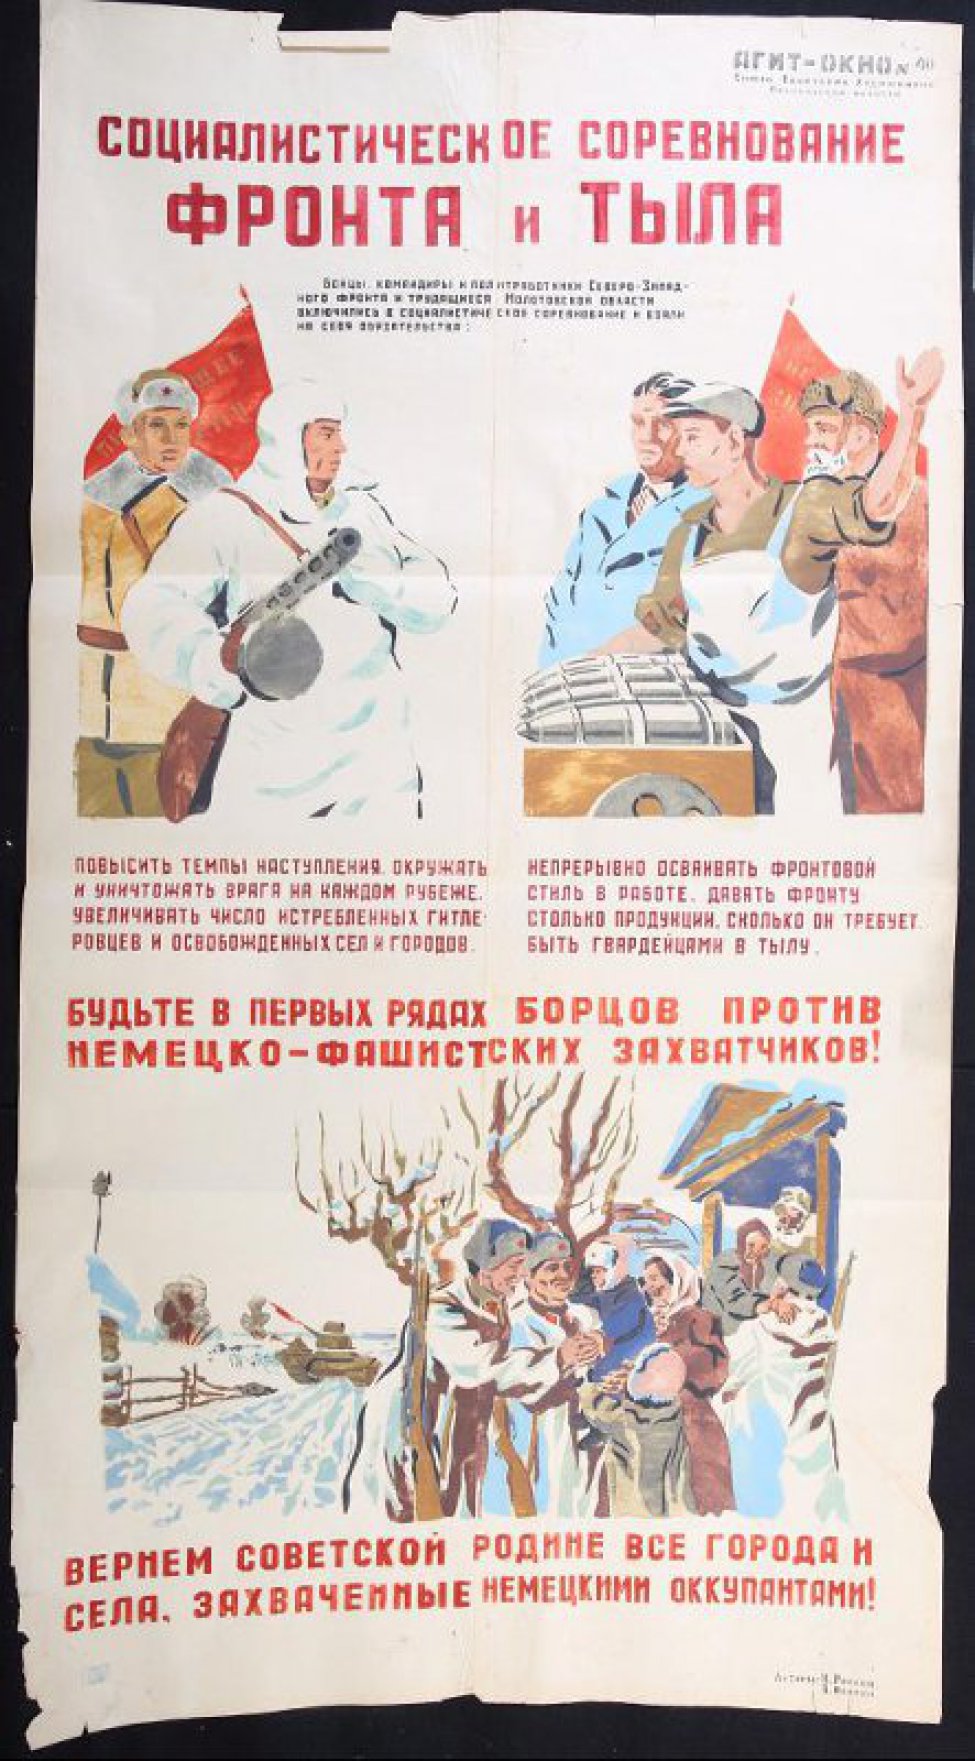 Помещено 3 рисунка, под каждым текст: 1) бойцы Советской Армии с автоматами; 2) трое рабочих, перед ними лежат снаряды; 3) бойцы освободили оккупированную деревню.